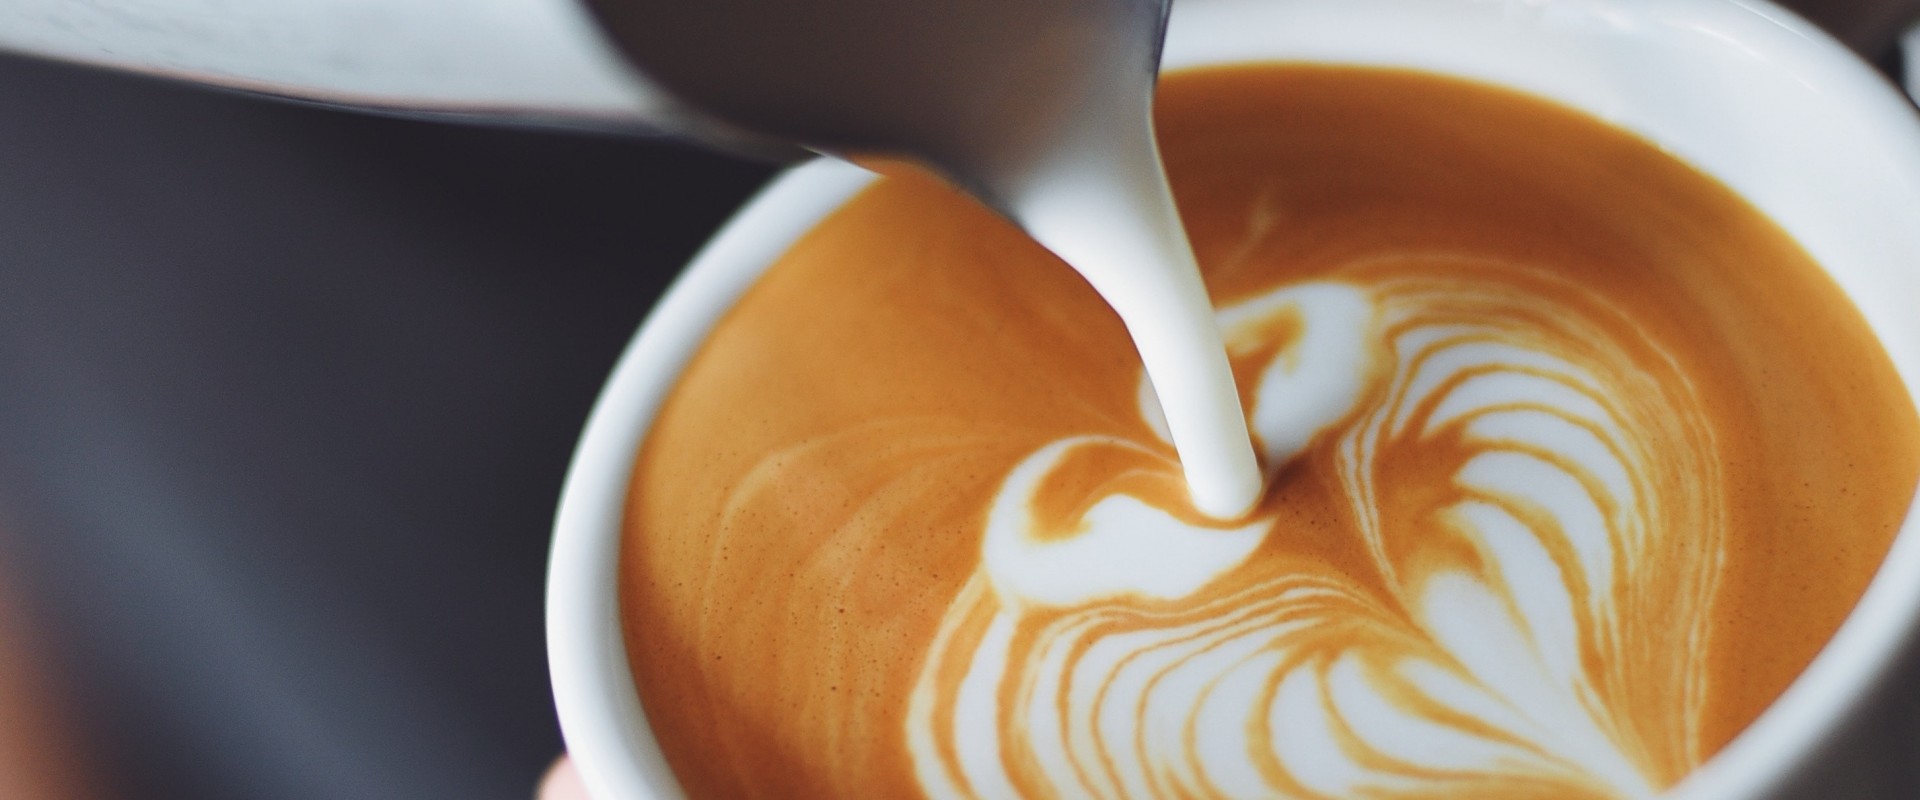 Как выстроить дофаминовый поток для гостей кофейни?